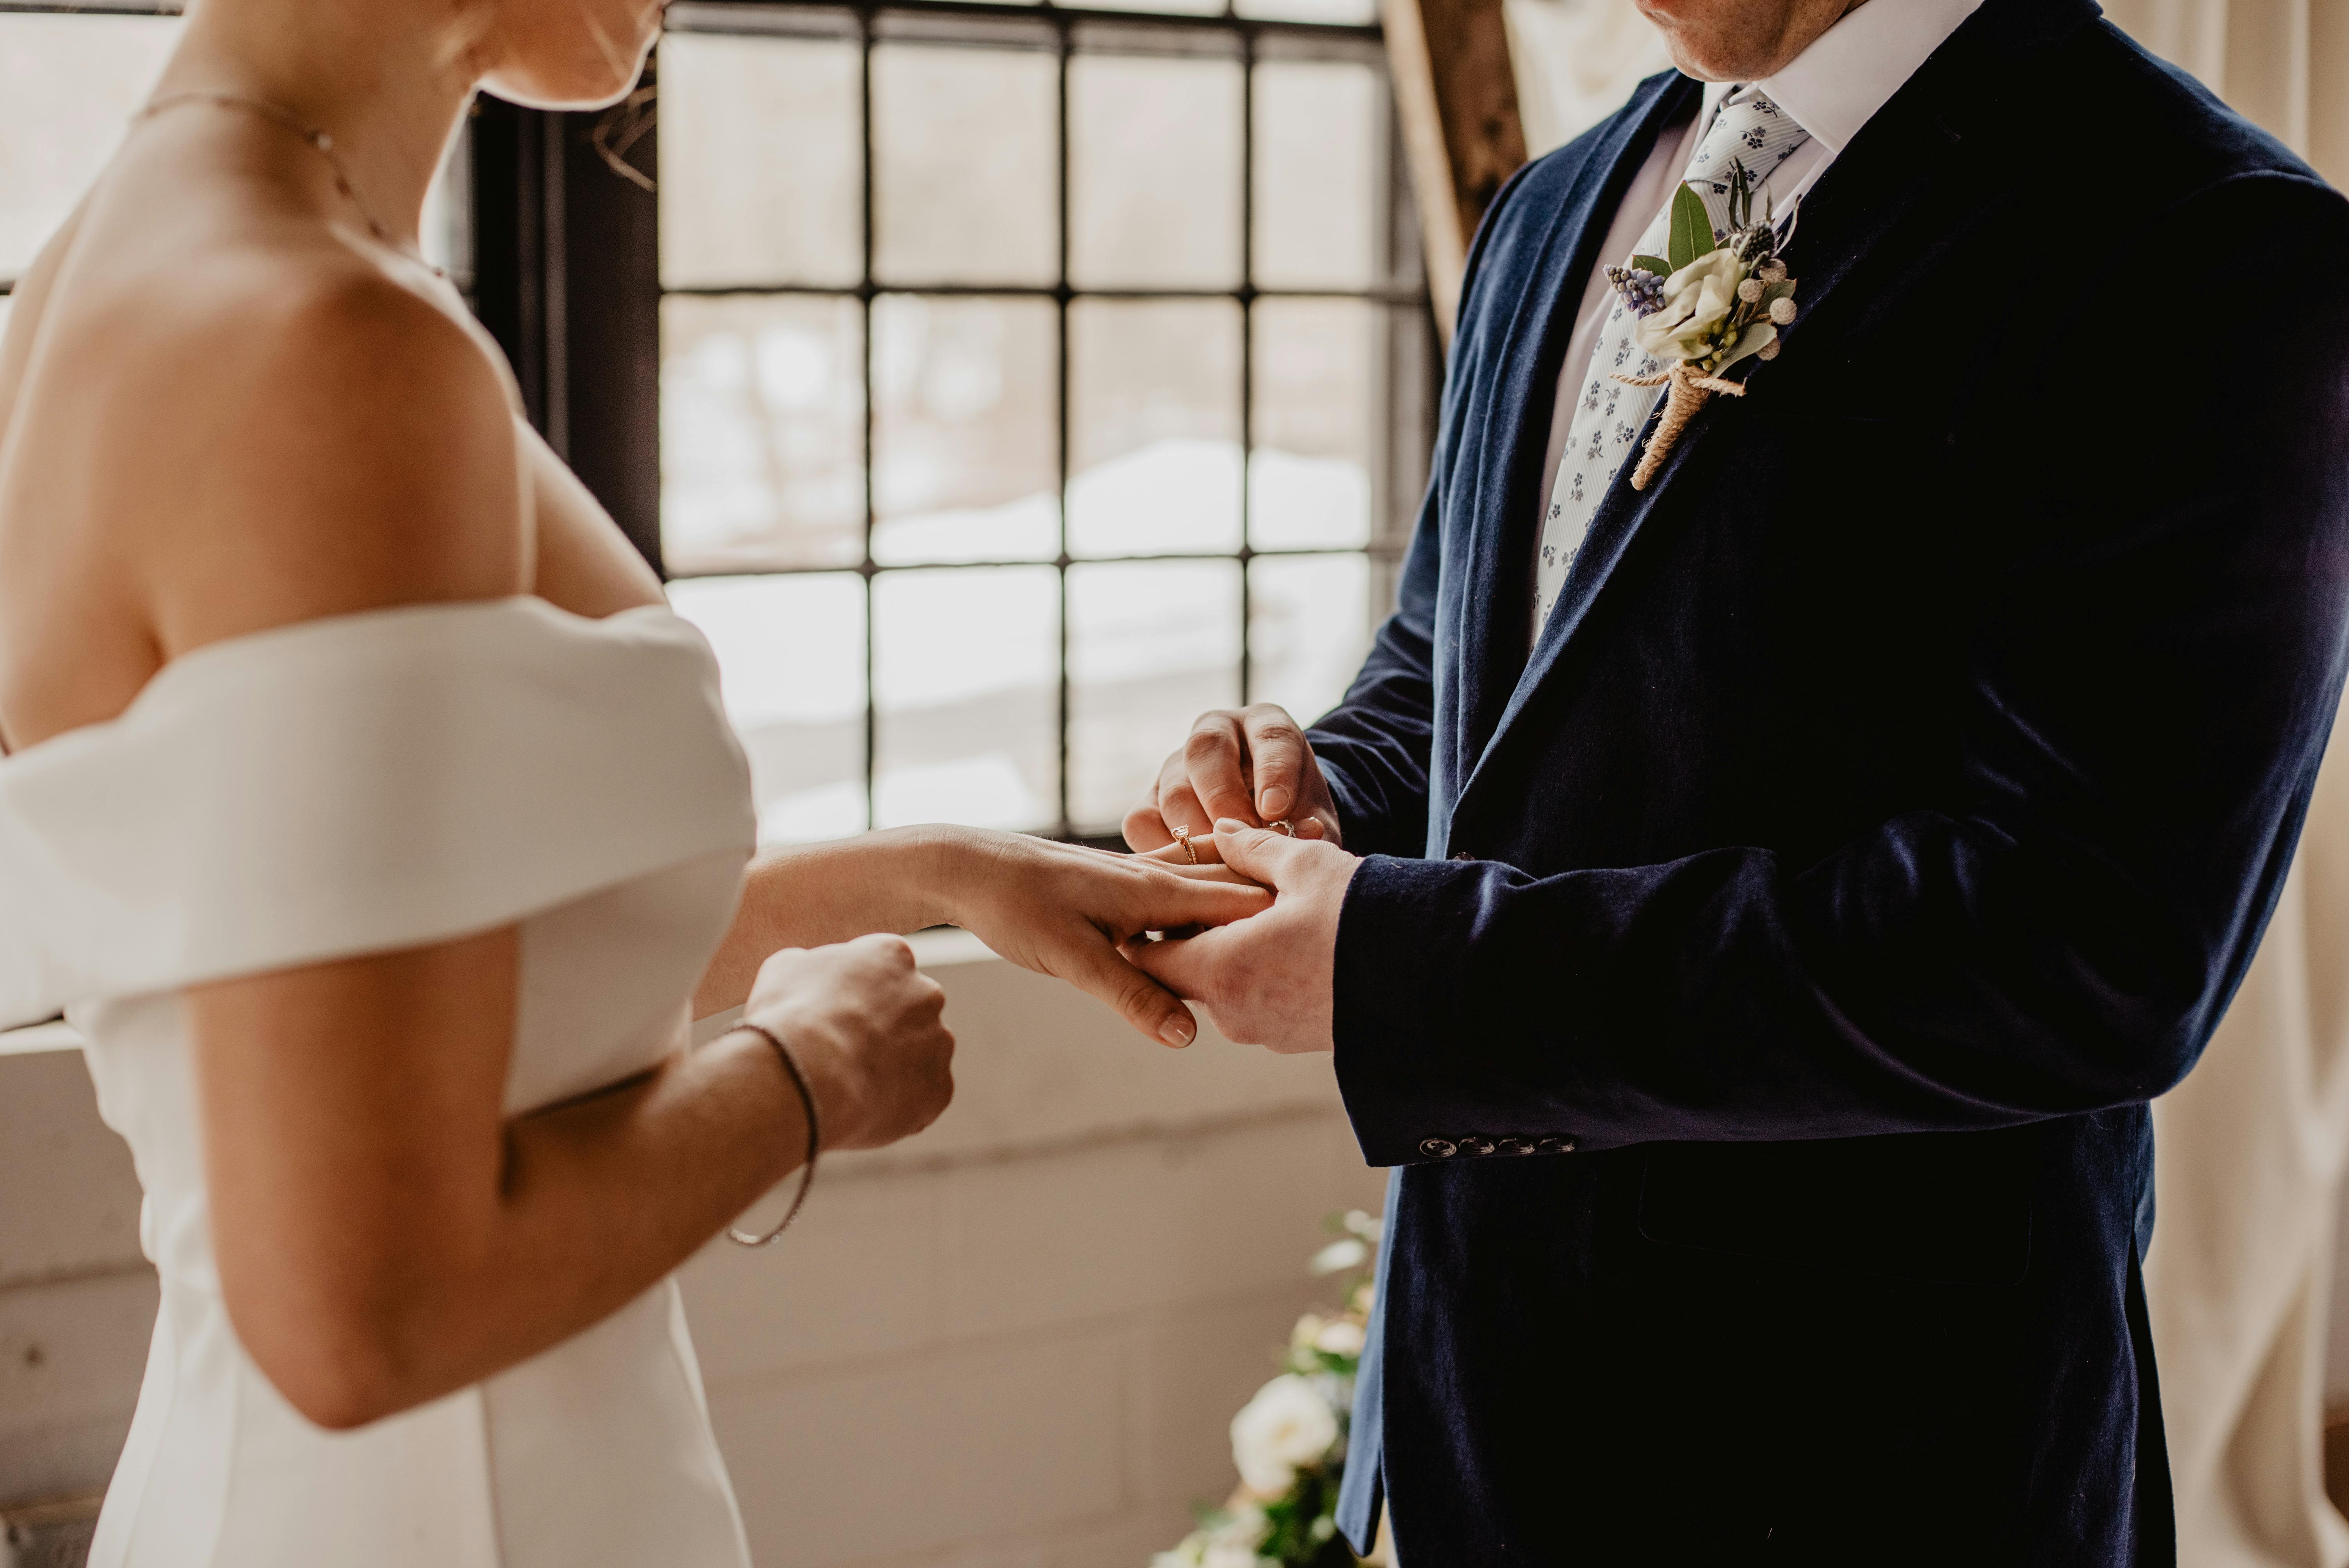 Bride and groom | Source: Pexels